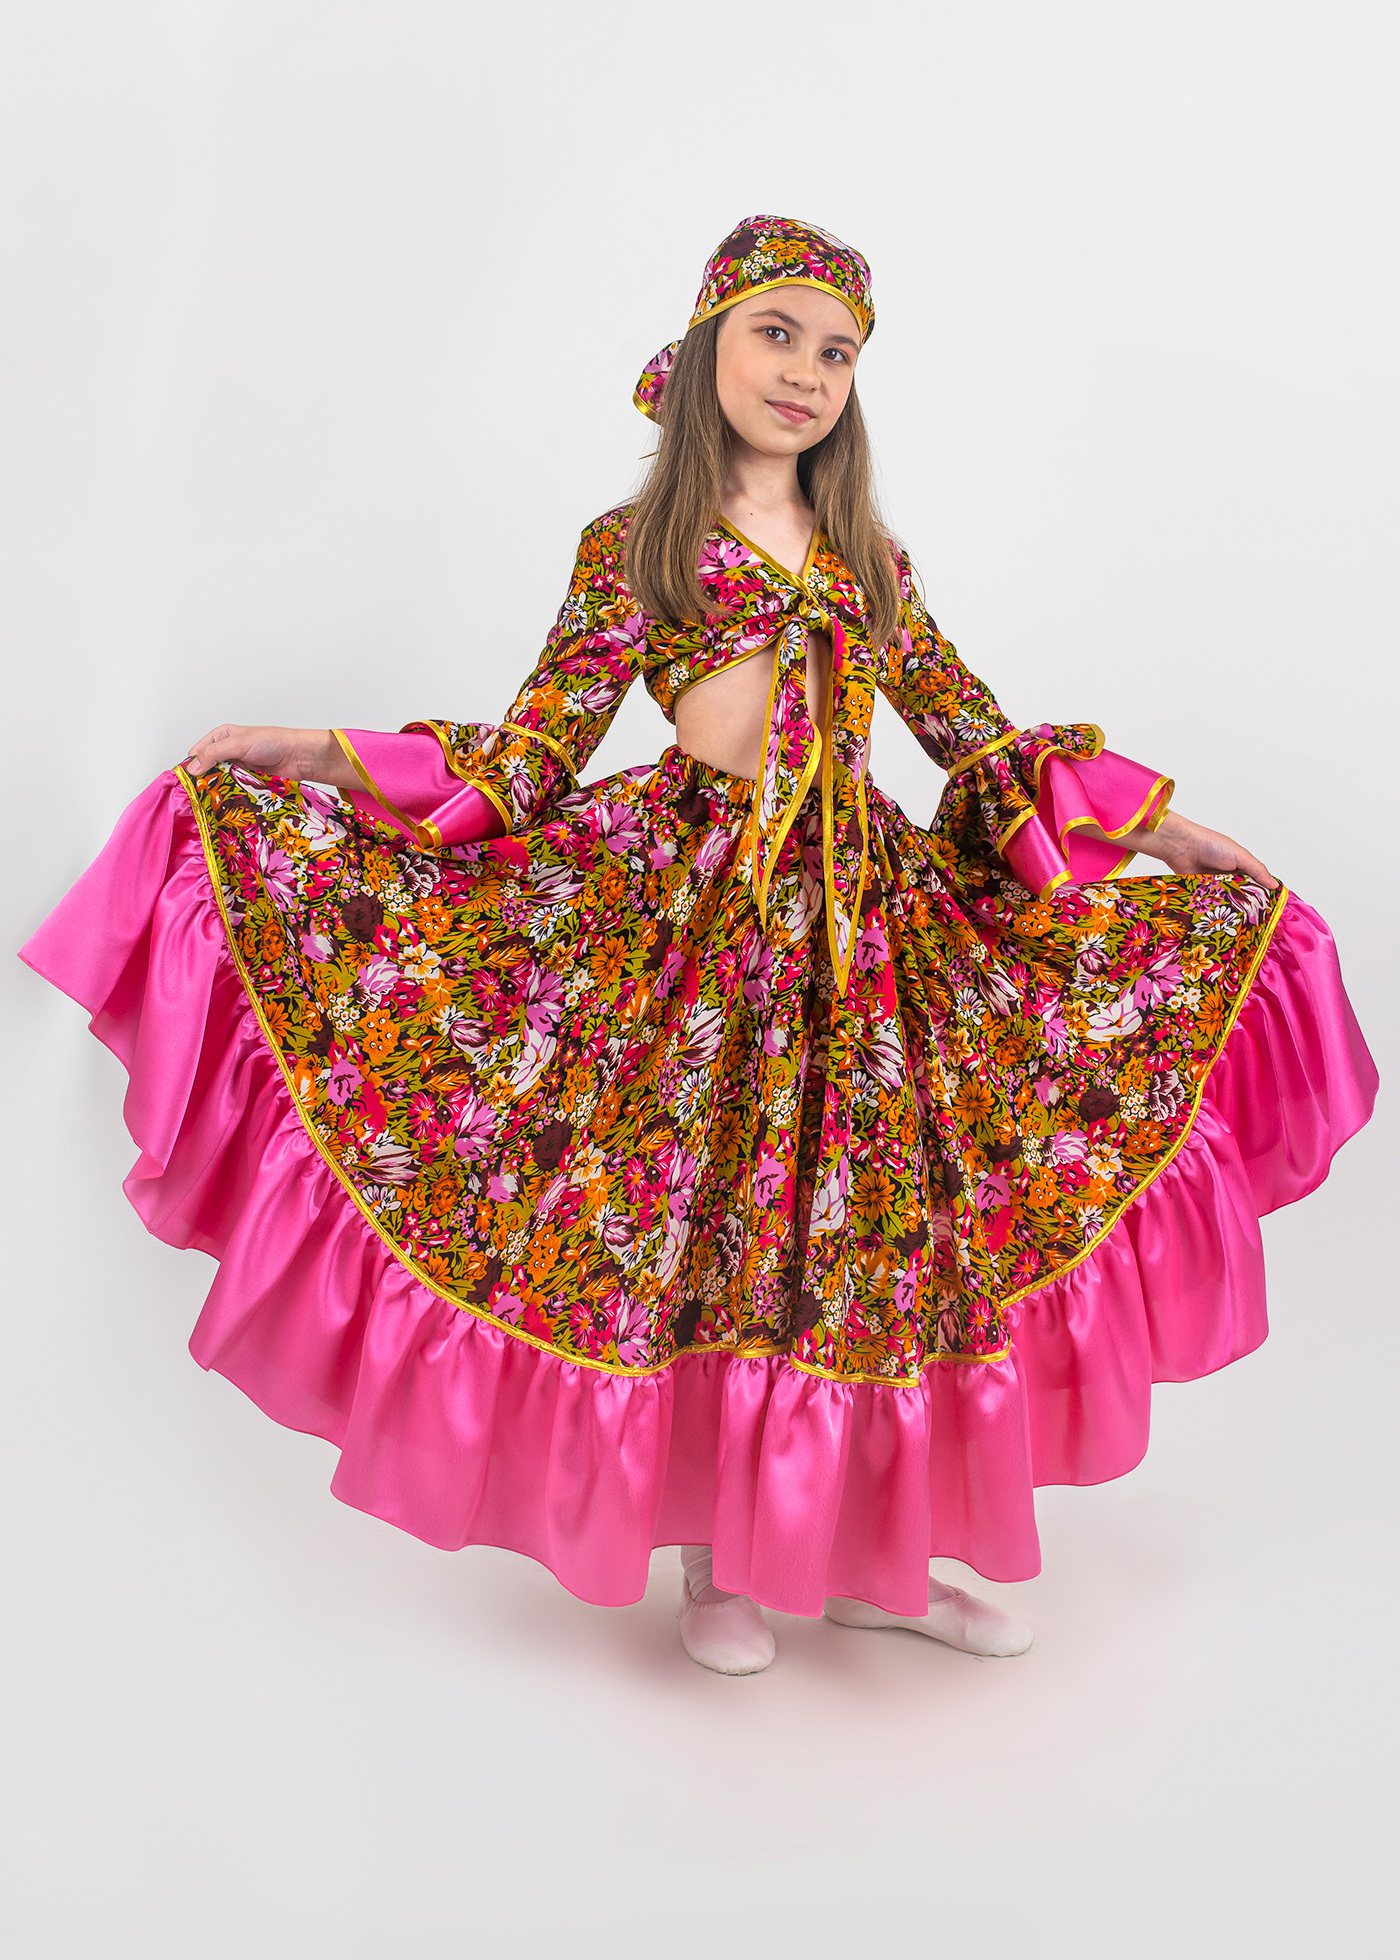 Цыган, детский карнавальный костюм от торговой марки «Алиса»